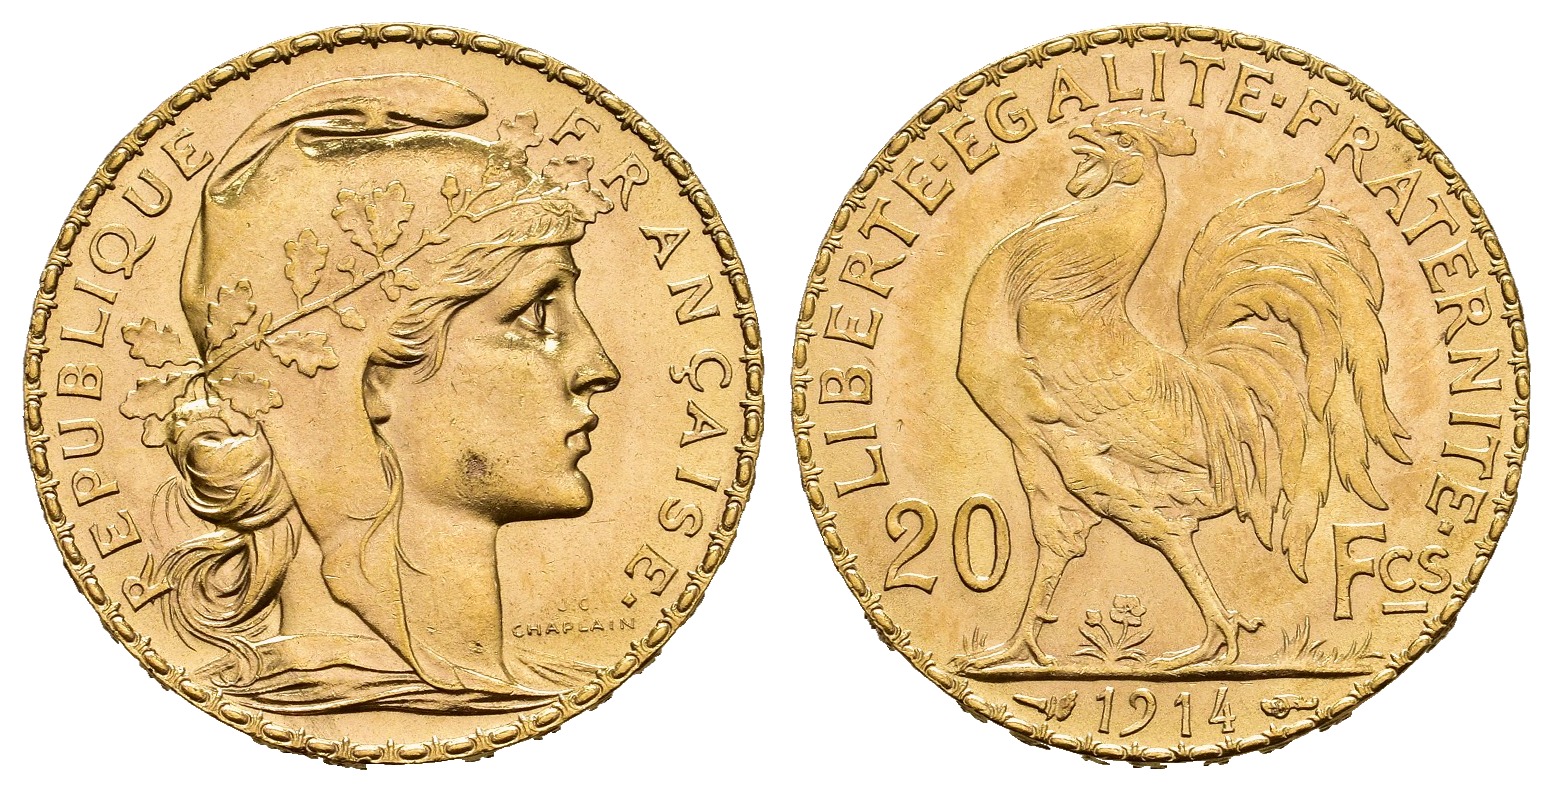 PEUS 8634 Frankreich 5,81 g Feingold. Marianne / Galischer Hahn 20 Francs GOLD 1914 Kl. Kratzer, Vorzüglich